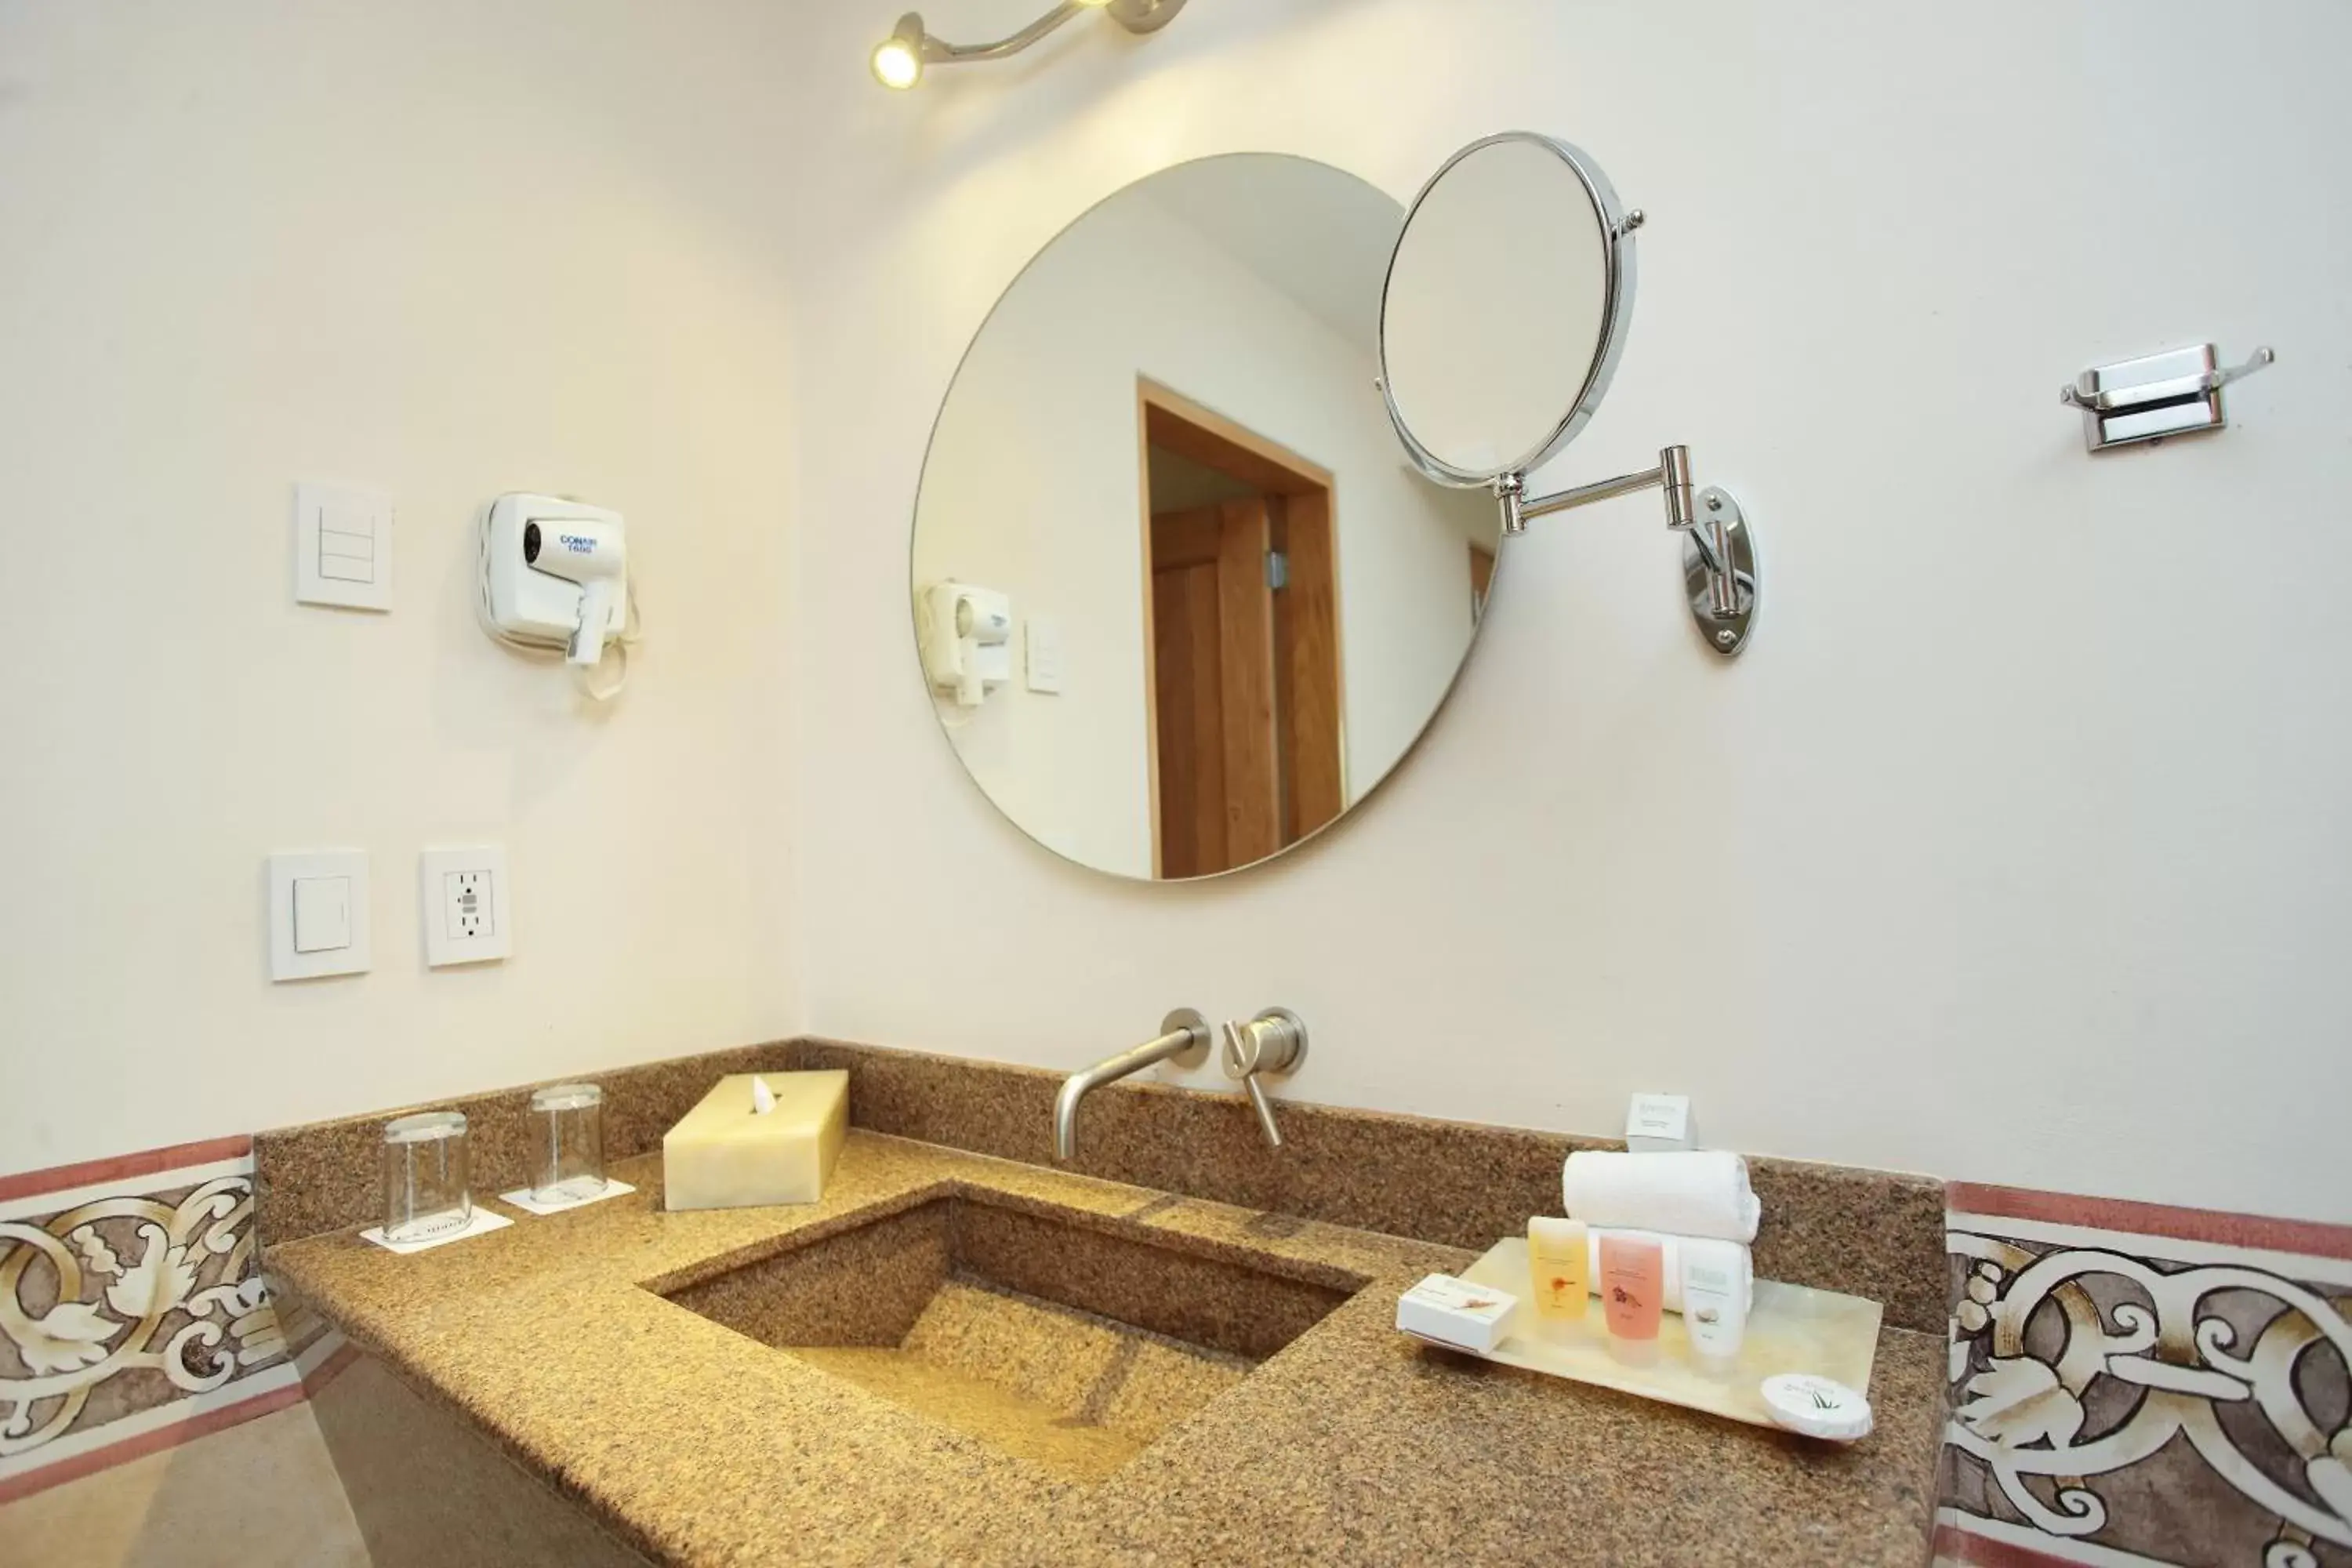 Shower, Bathroom in Hosteria Las Quintas Hotel & Spa